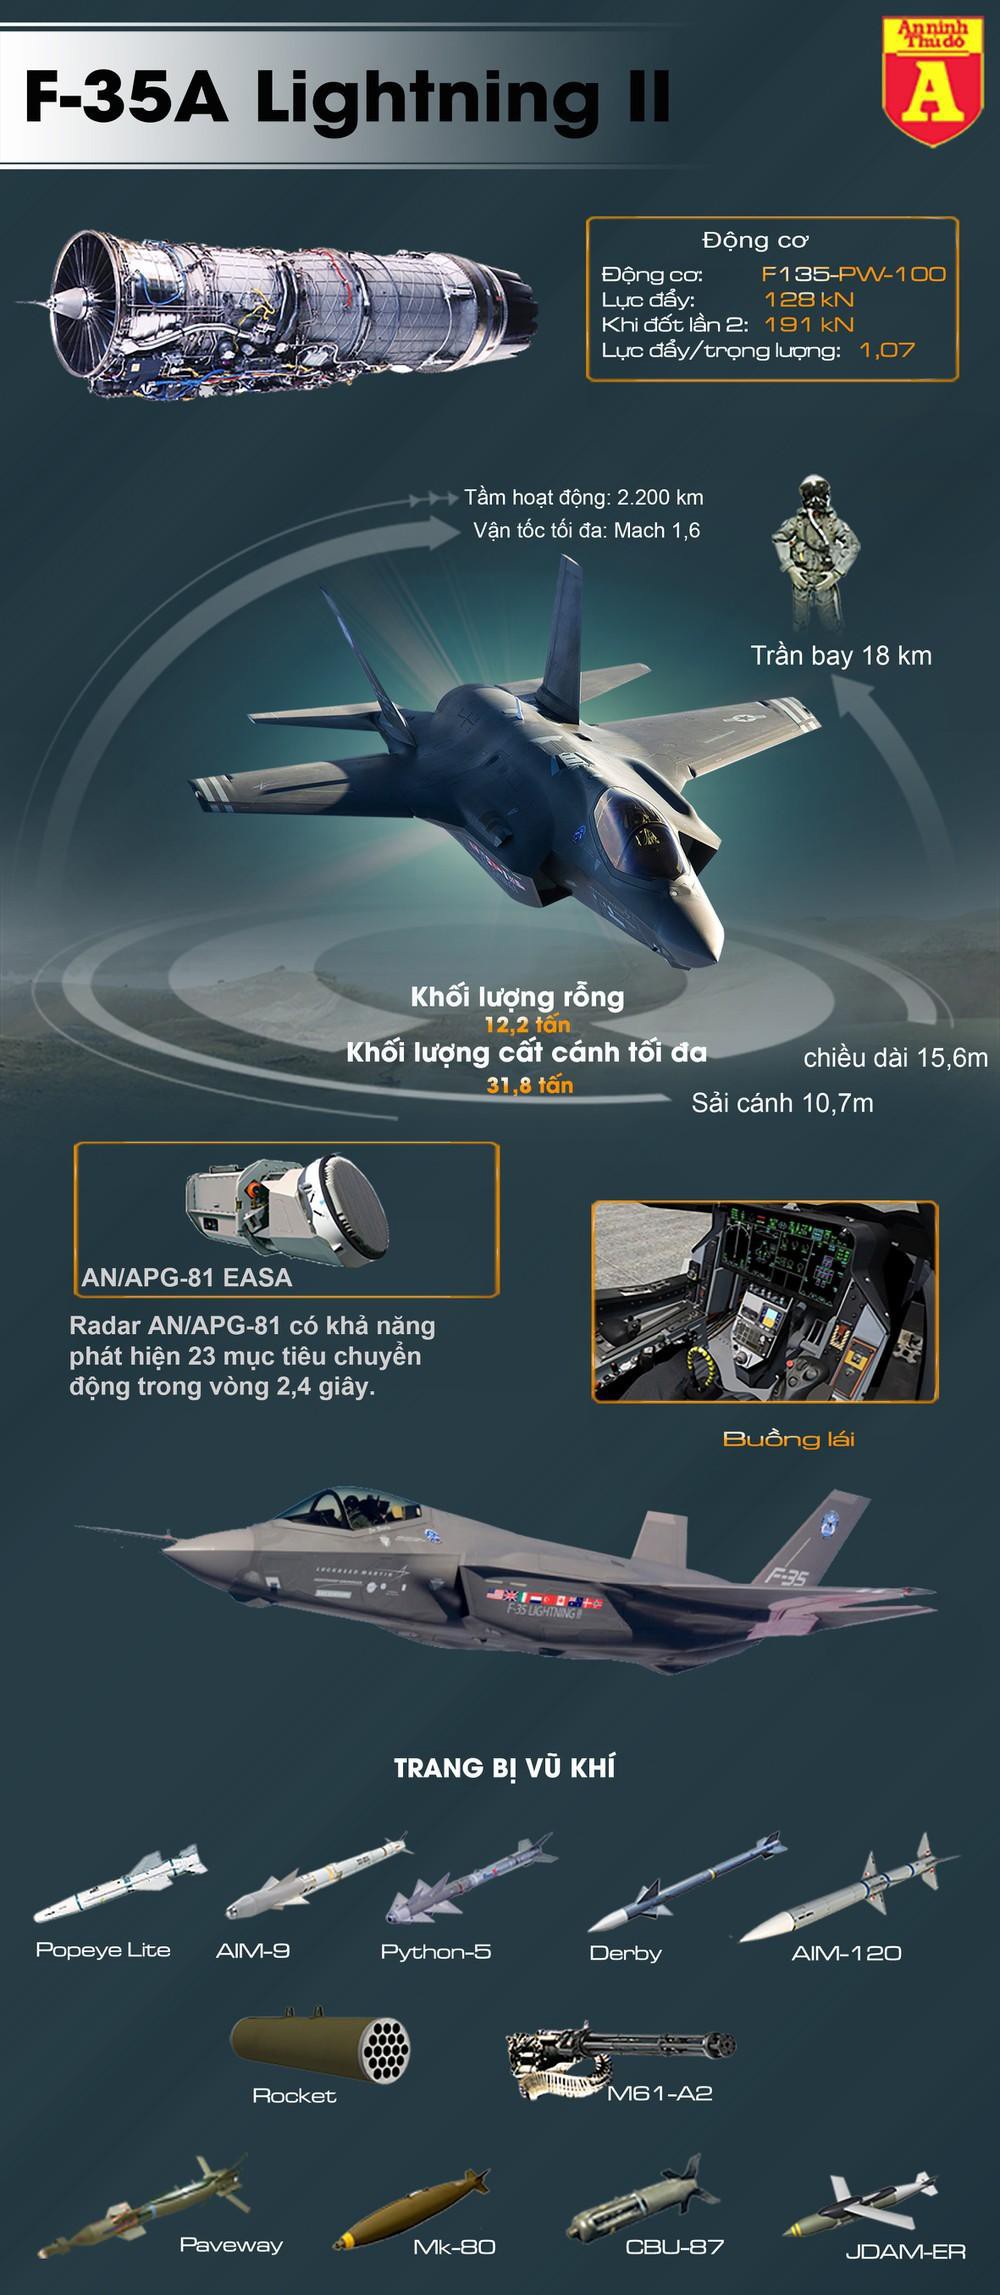 Tiêm kích tàng hình F-35A có thể mang được những loại vũ khí nào? - Ảnh 1